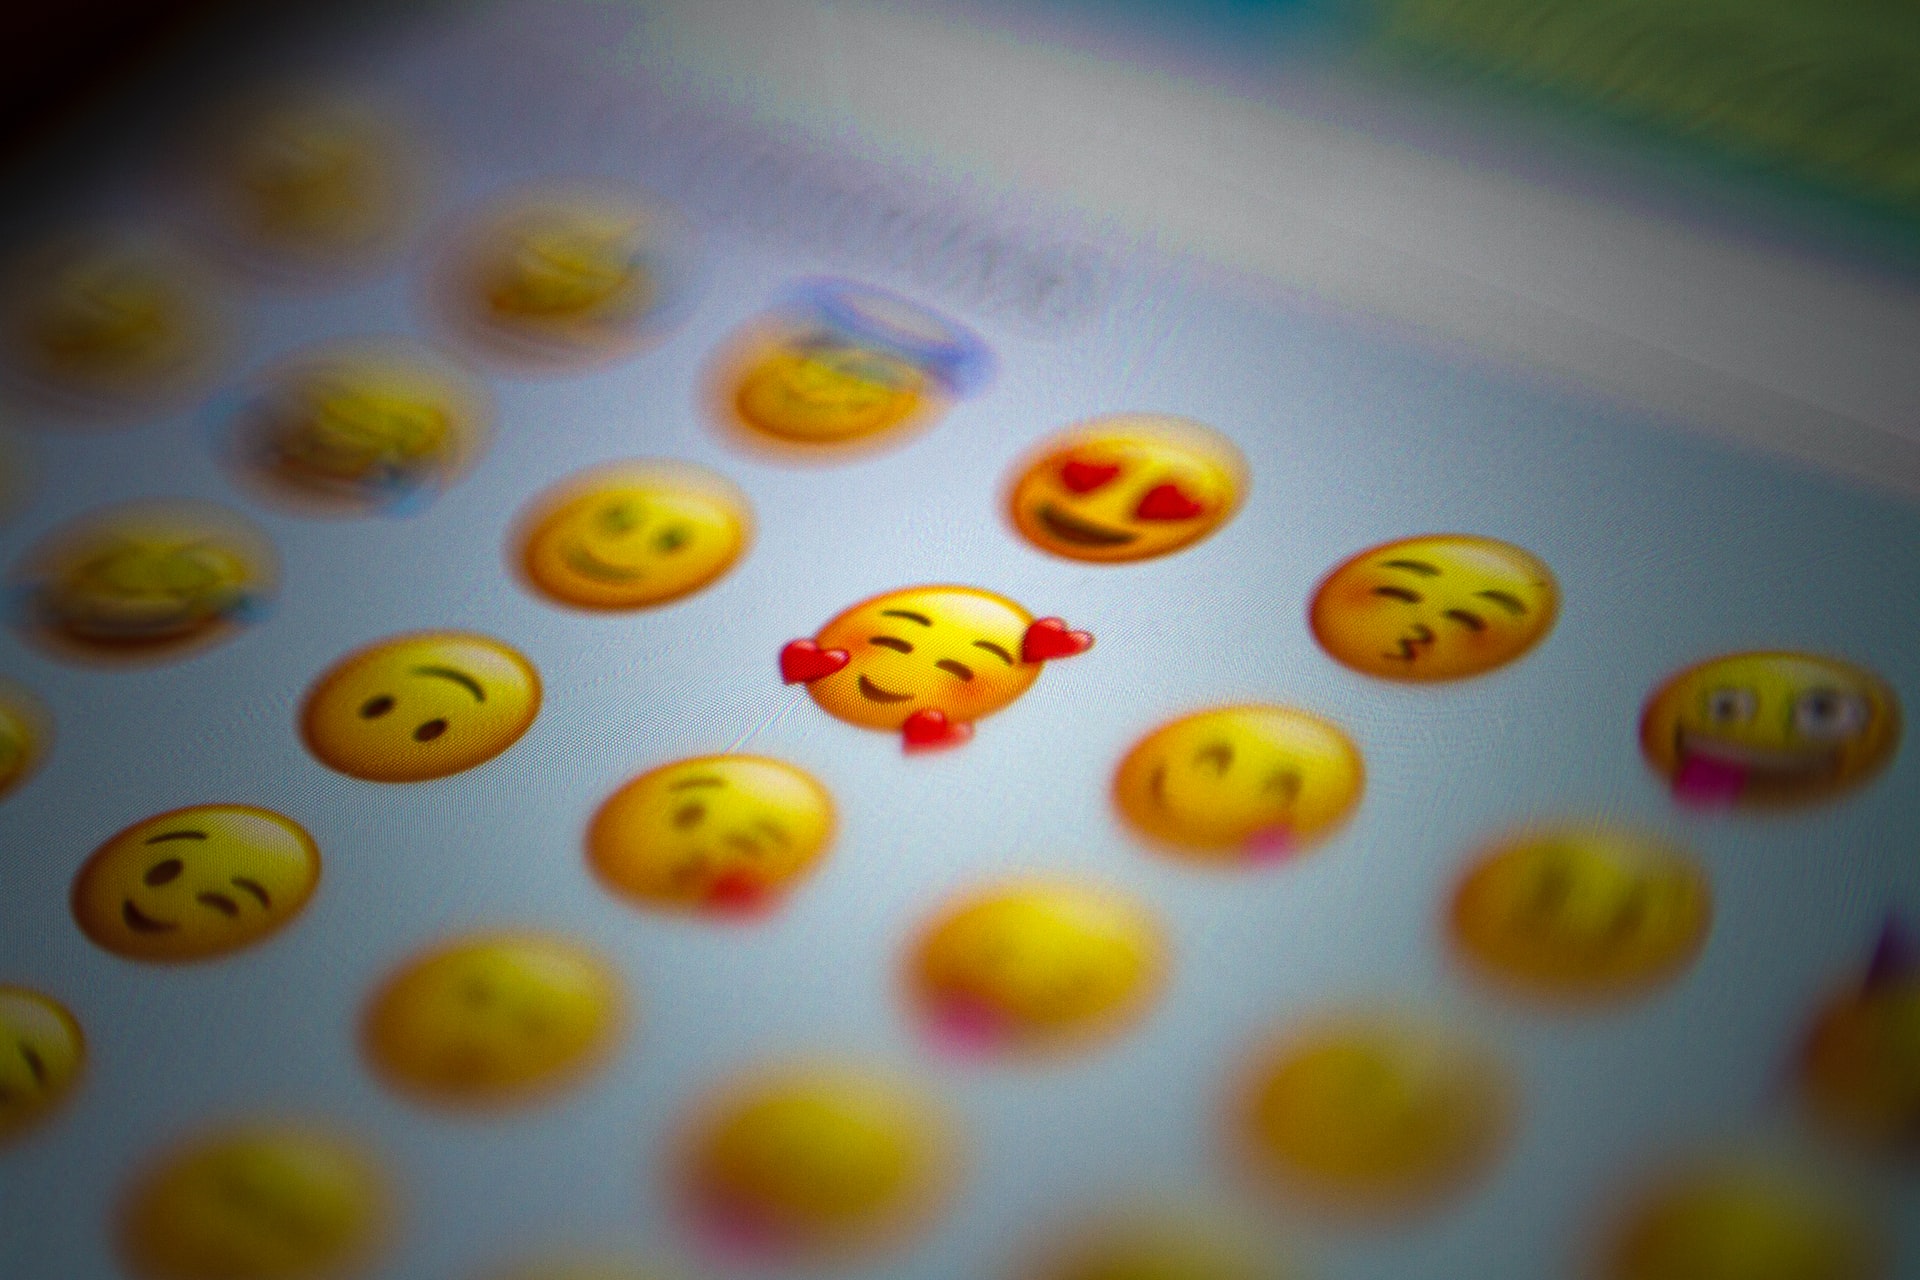 Love Emoji by Domingo Alvarez E - Unsplash